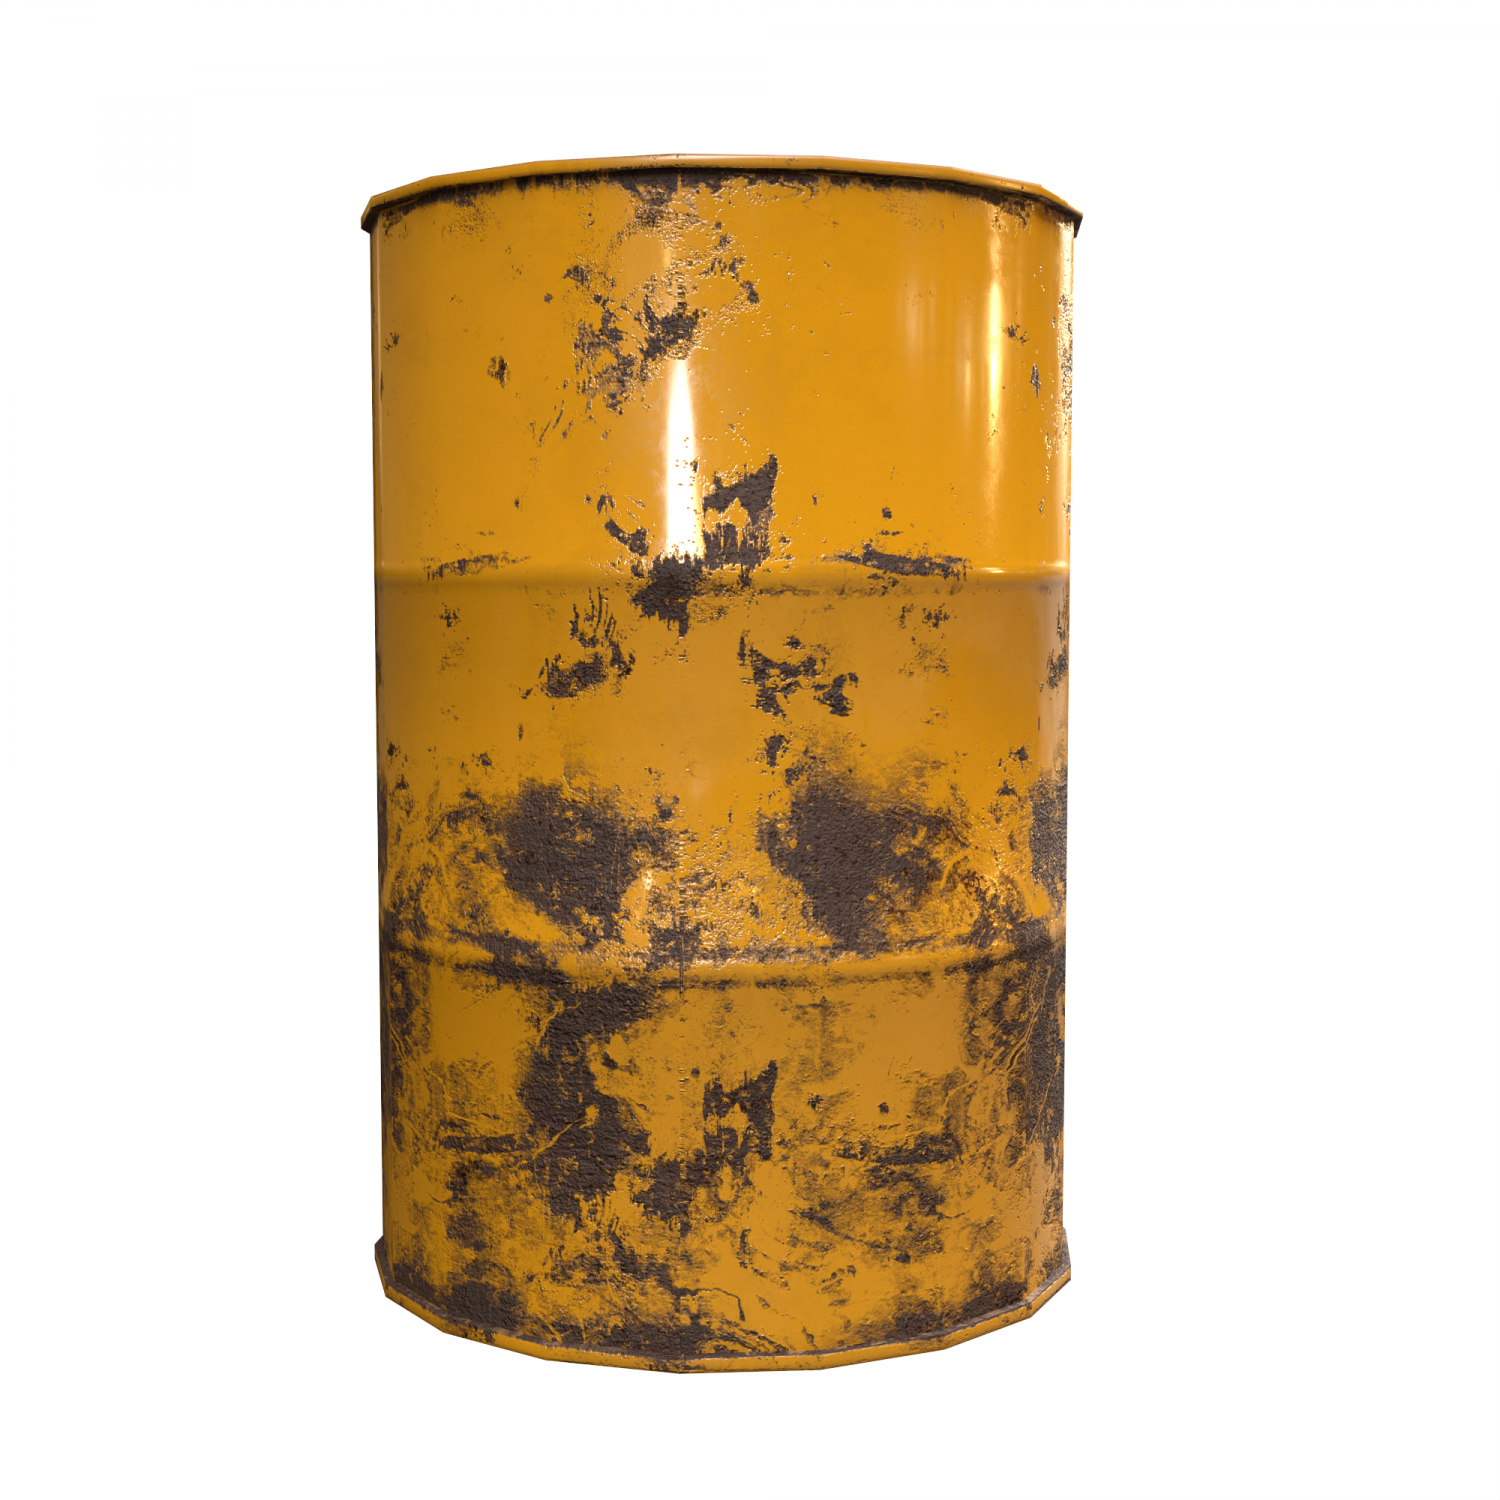 Golden barrel rust фото 42